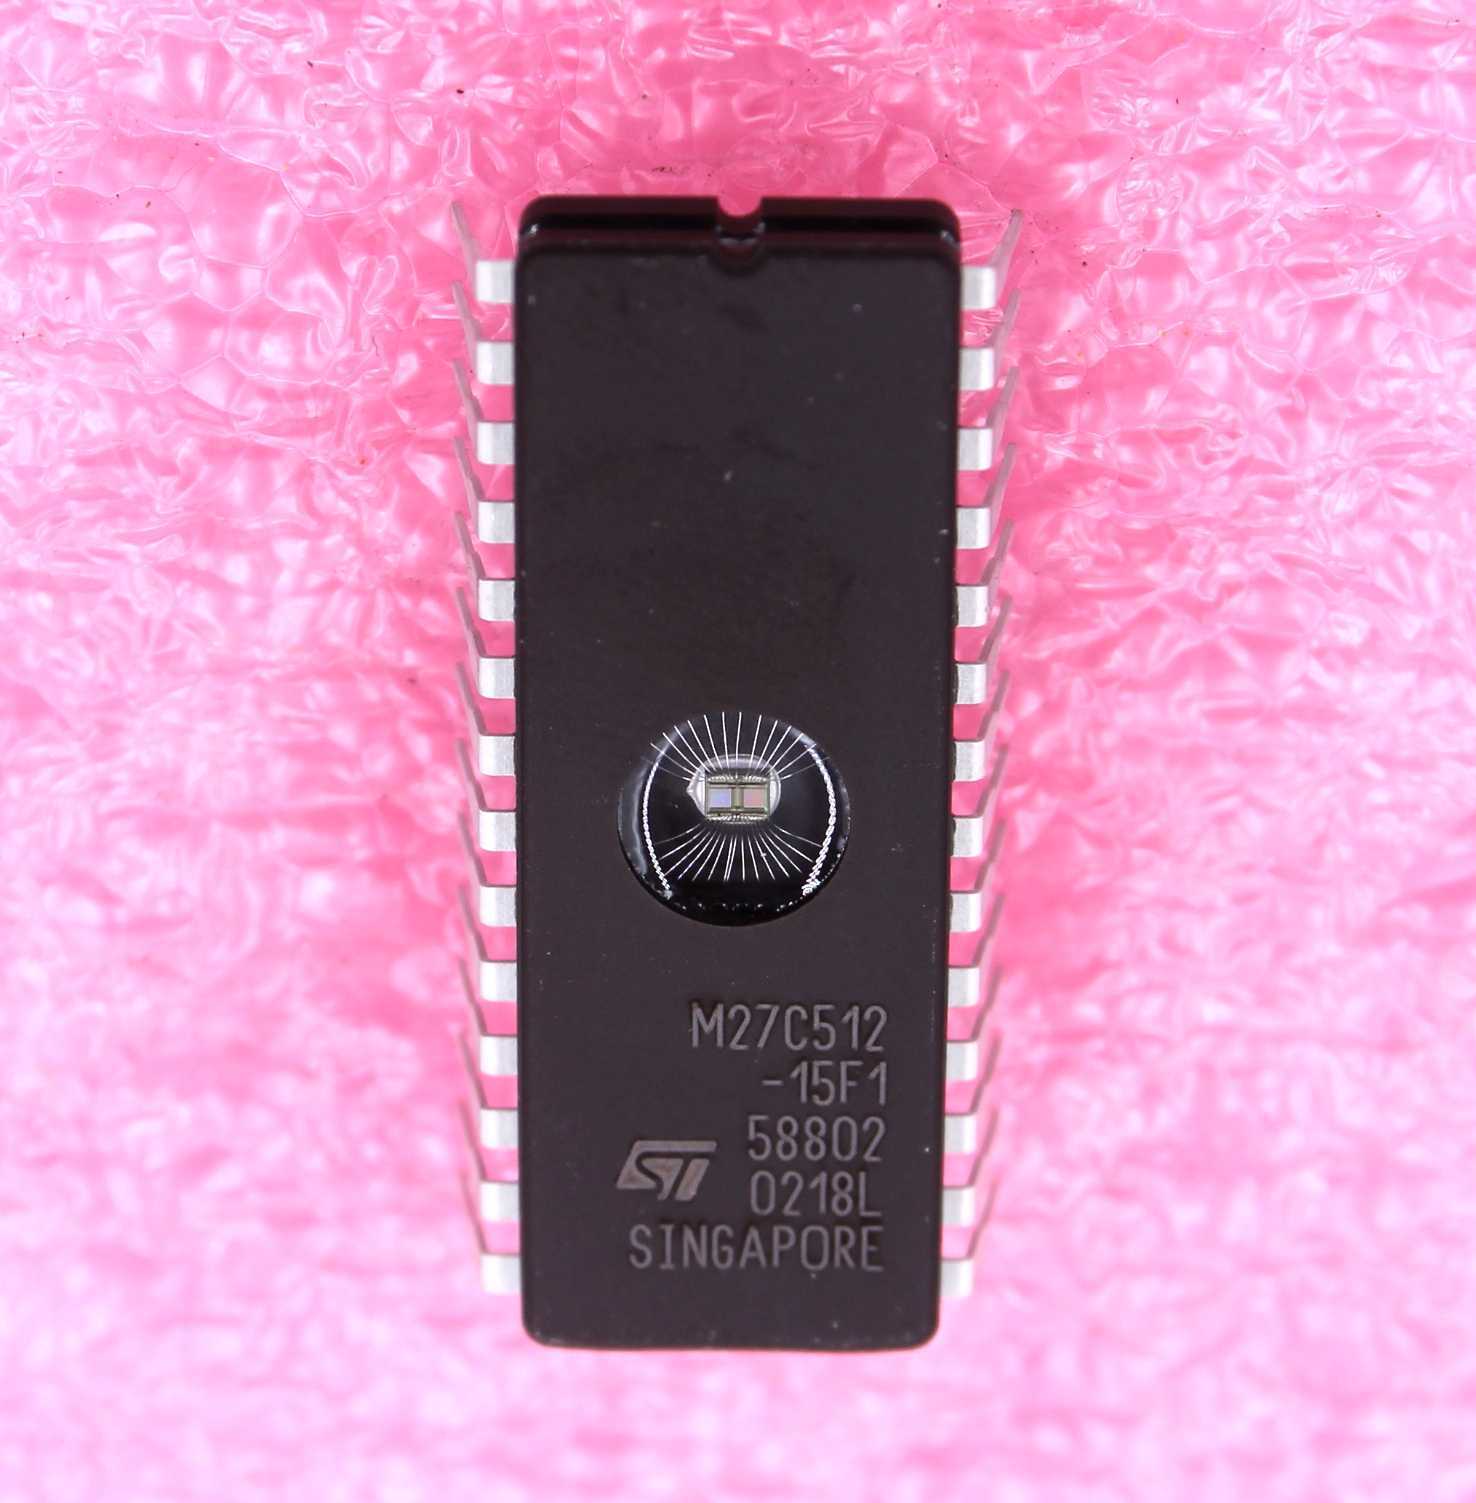 ST Microelectronics M27C512-15F1 UV EPROM - Lot of 10